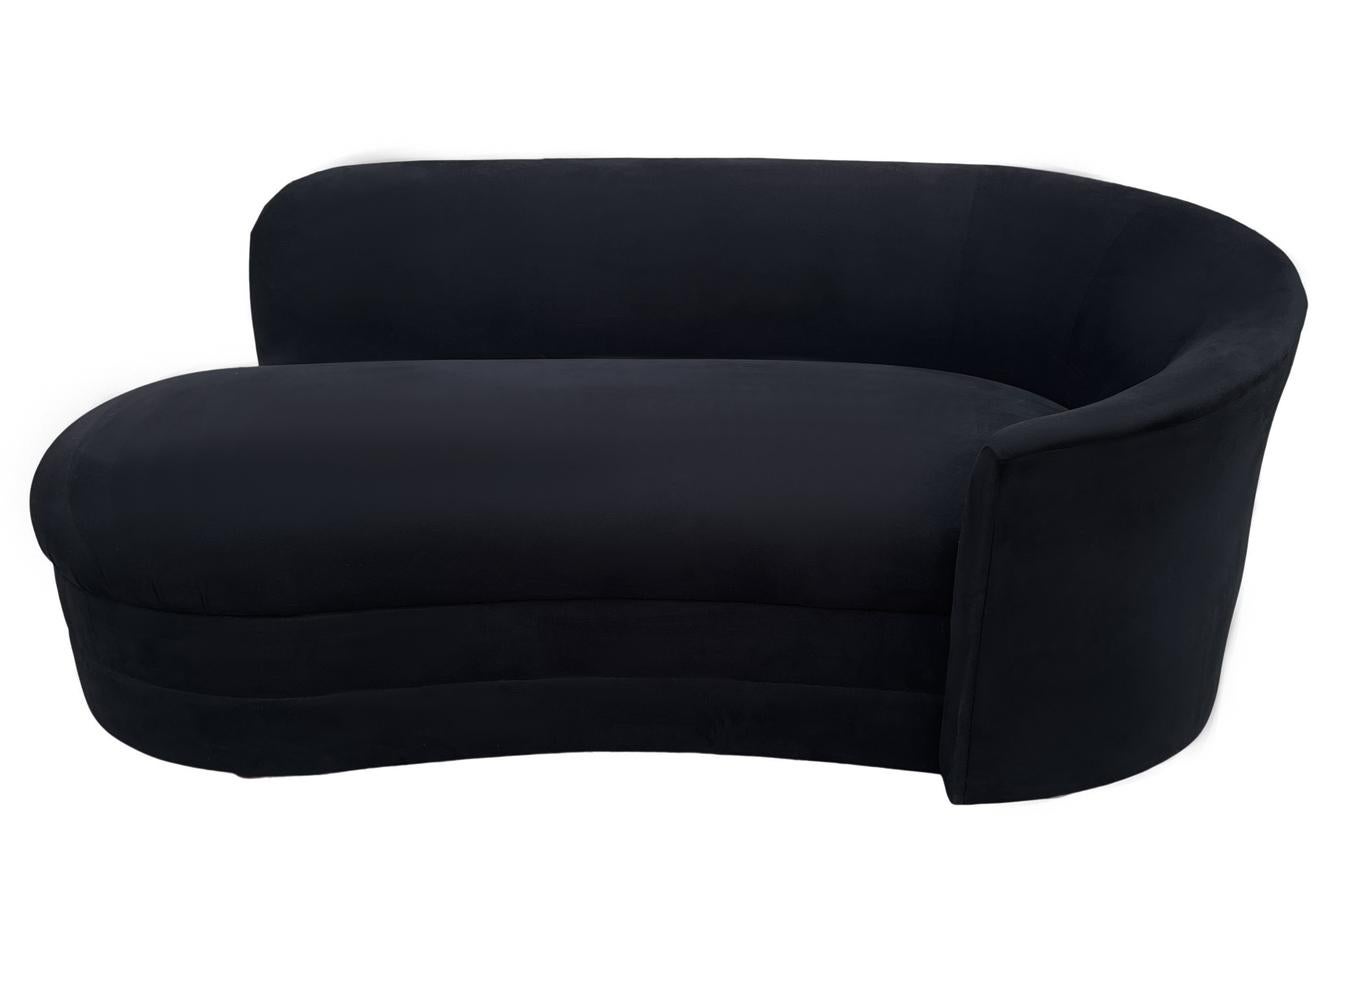 Eine elegante, moderne Chaiselongue aus den 1980er Jahren. Dieses gut gemachte Sofa hat seine ursprüngliche schwarze, samtartige Polsterung behalten. Es ist in einem sehr sauberen Zustand und kann so wie es ist benutzt werden.